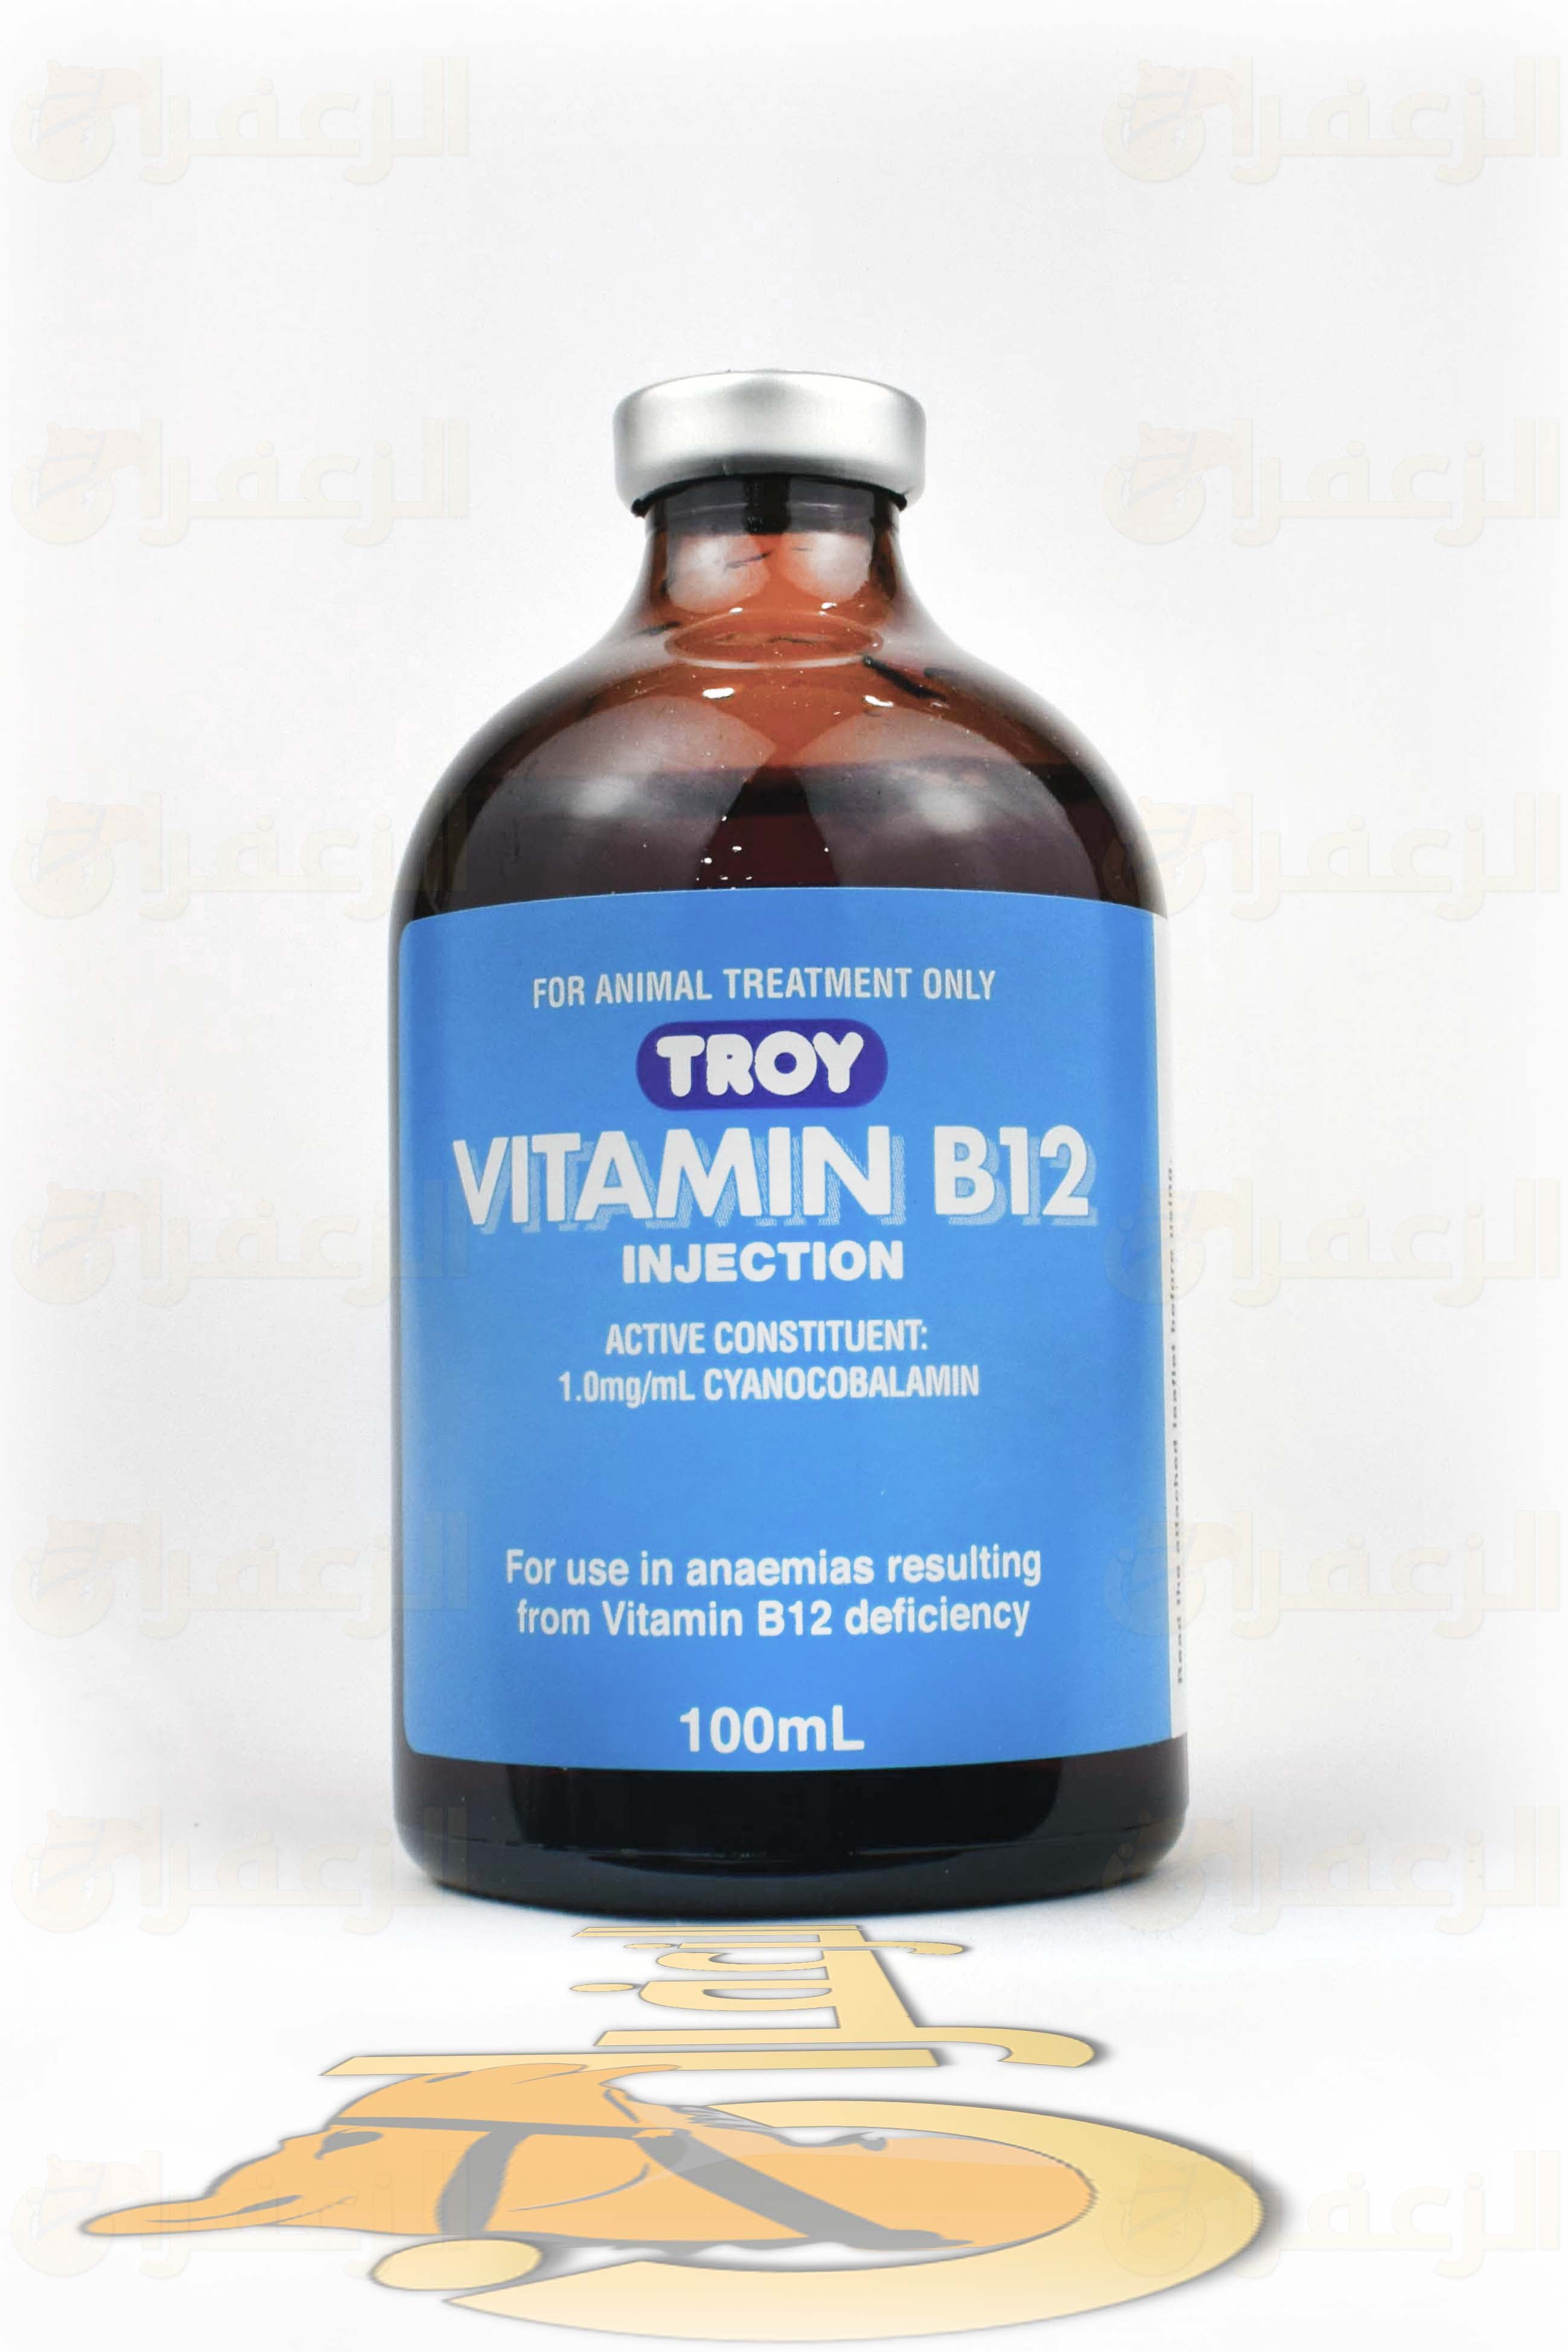 فيتامين ب12 تروي\ VITAMIN B12 - الزعفران